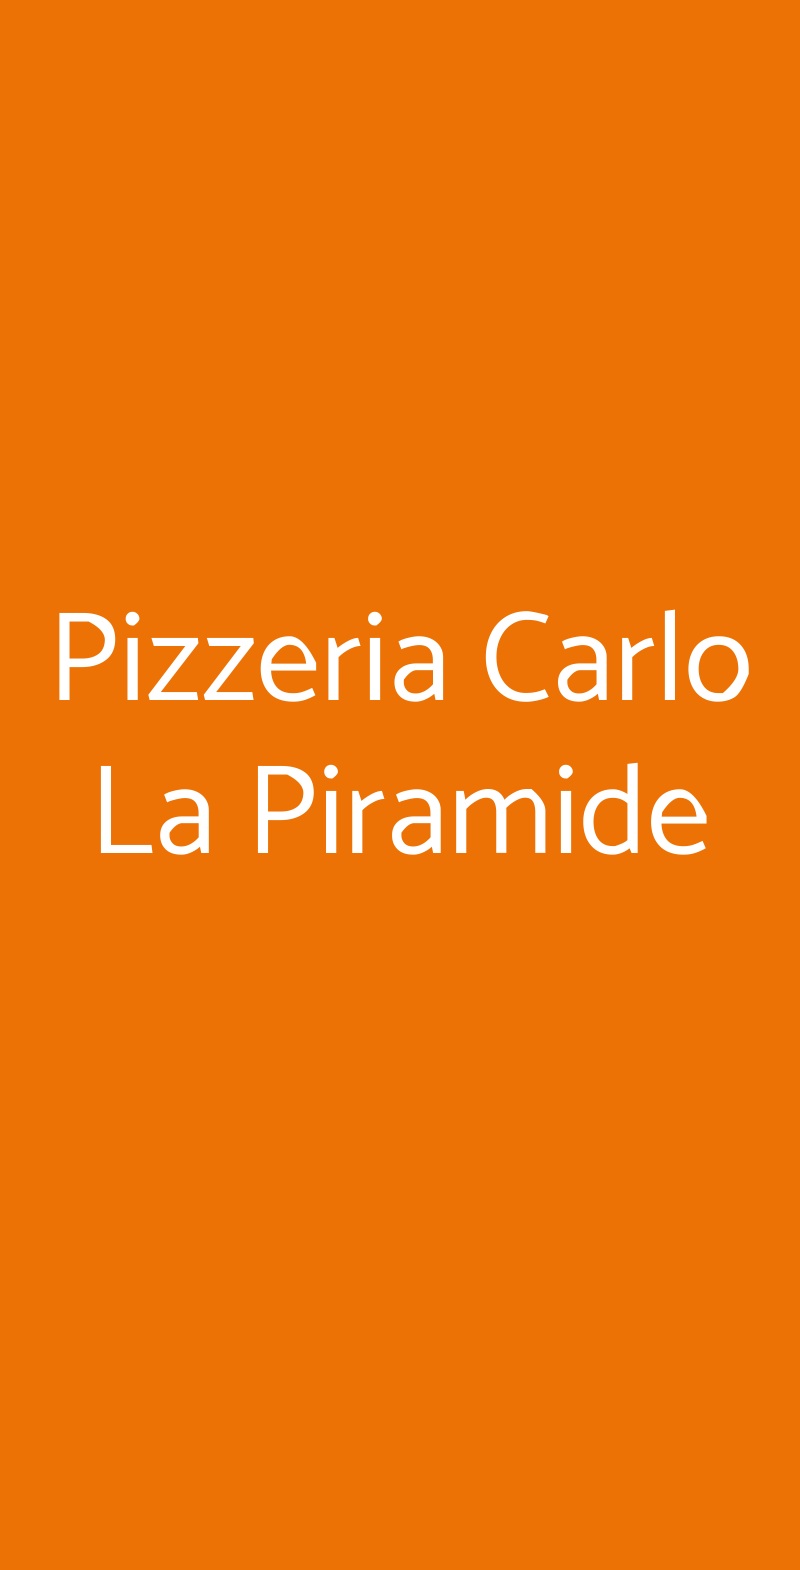 Pizzeria Carlo La Piramide Gossolengo menù 1 pagina